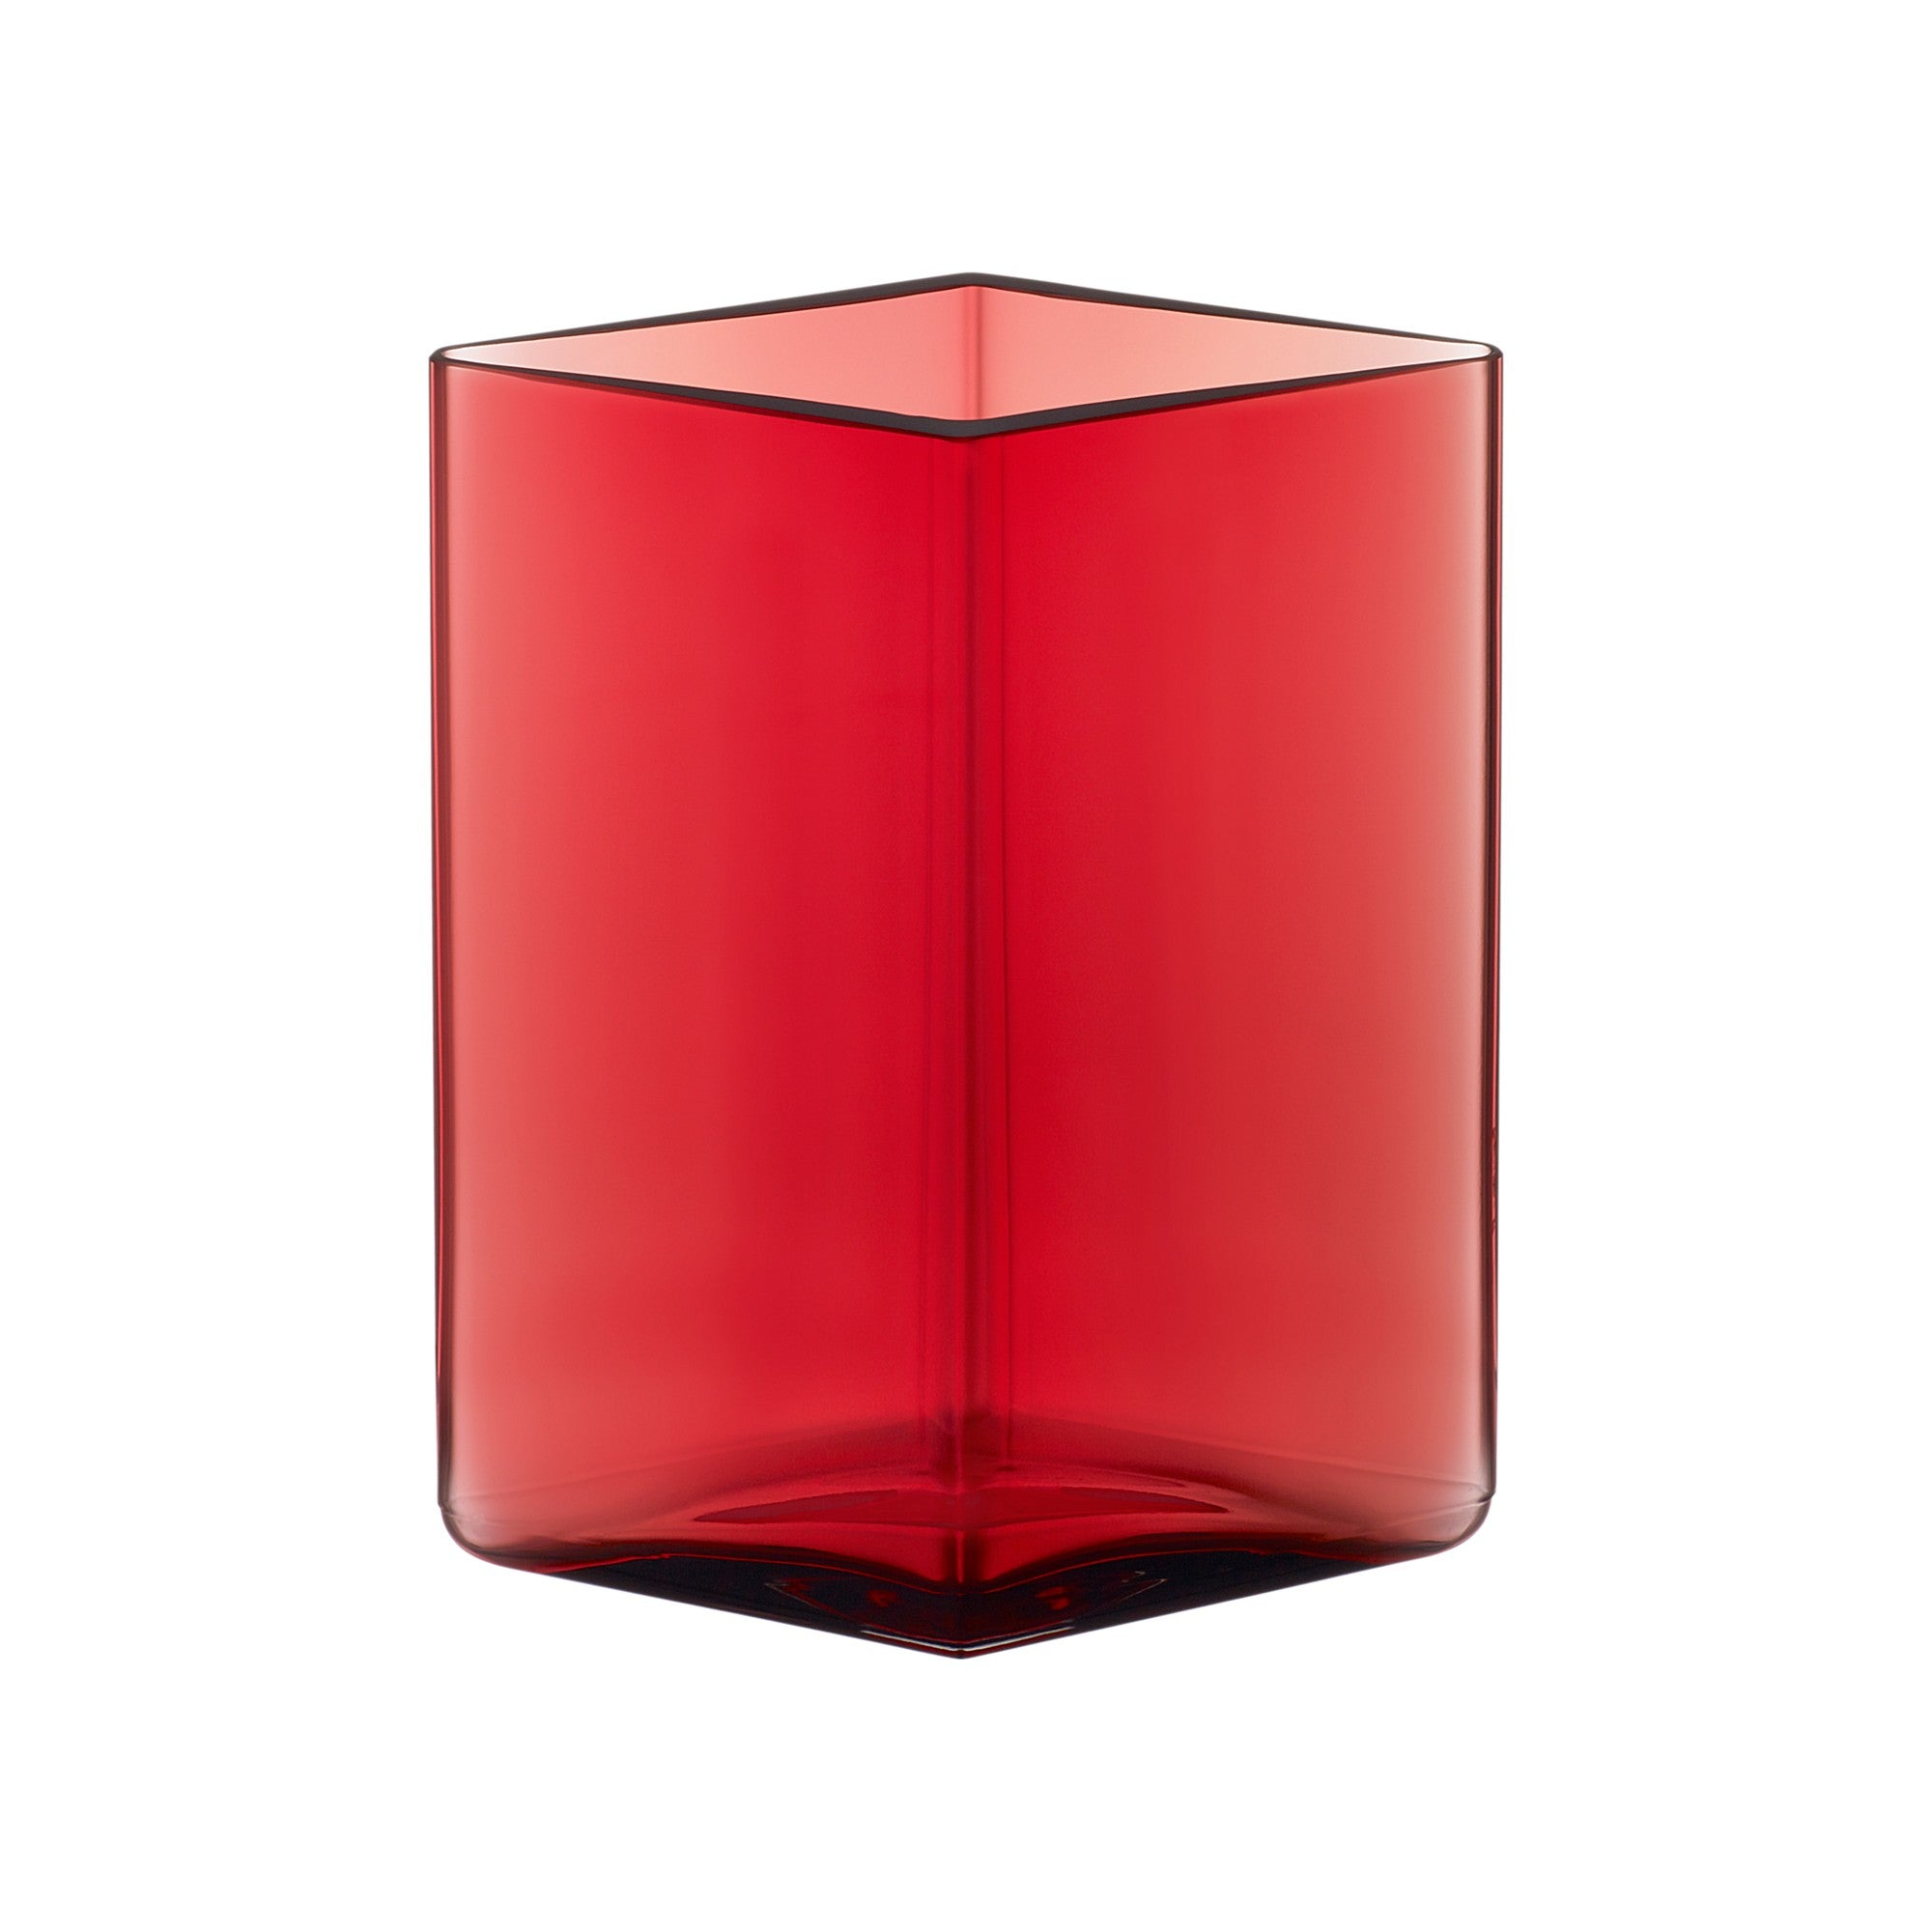 Ruutu vase 115x140mm / 4.5" x5.5" cranberry